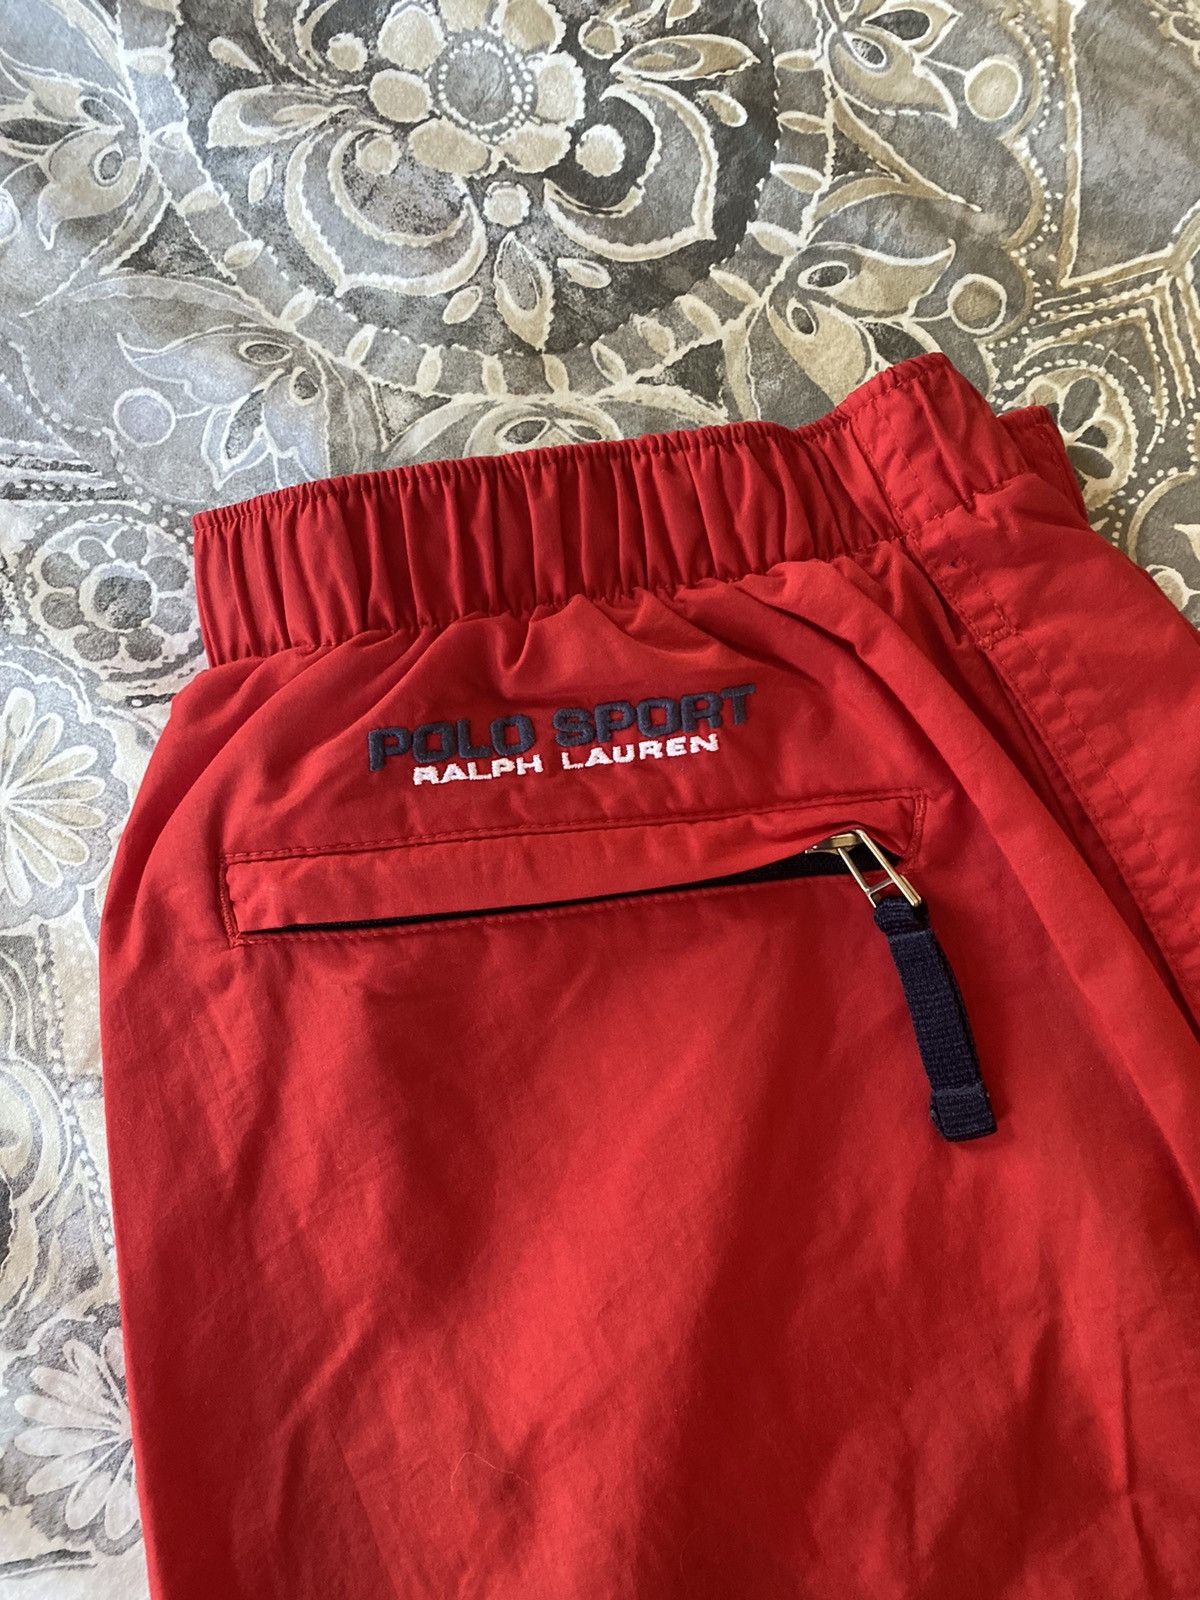 Polo Ralph Lauren Polo sport swishy pants vintage Size US 32 / EU 48 - 8 Thumbnail